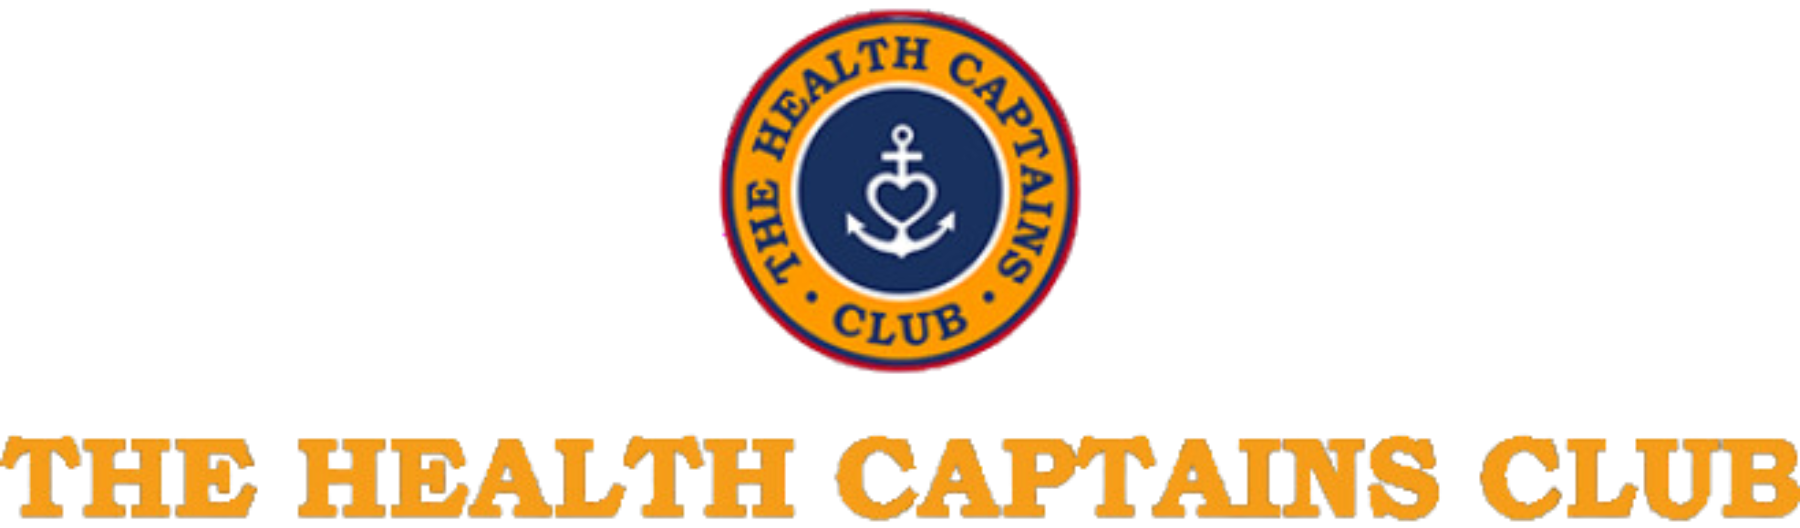 Healt captains club logo